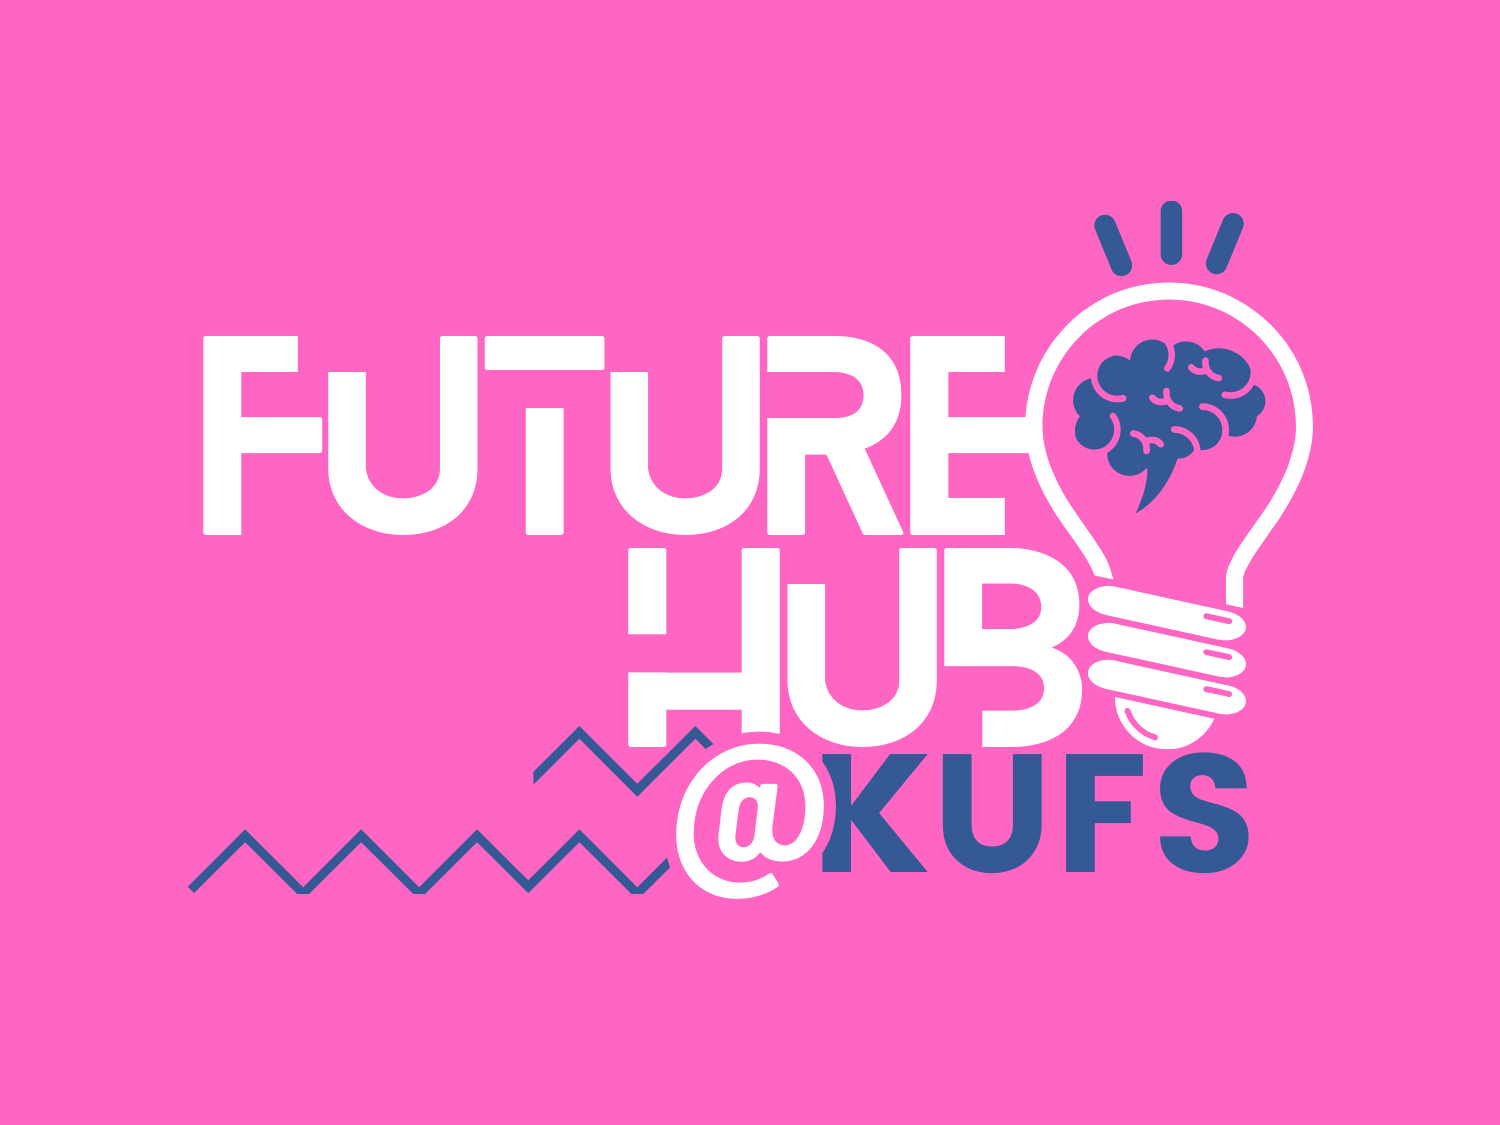 Future Hub